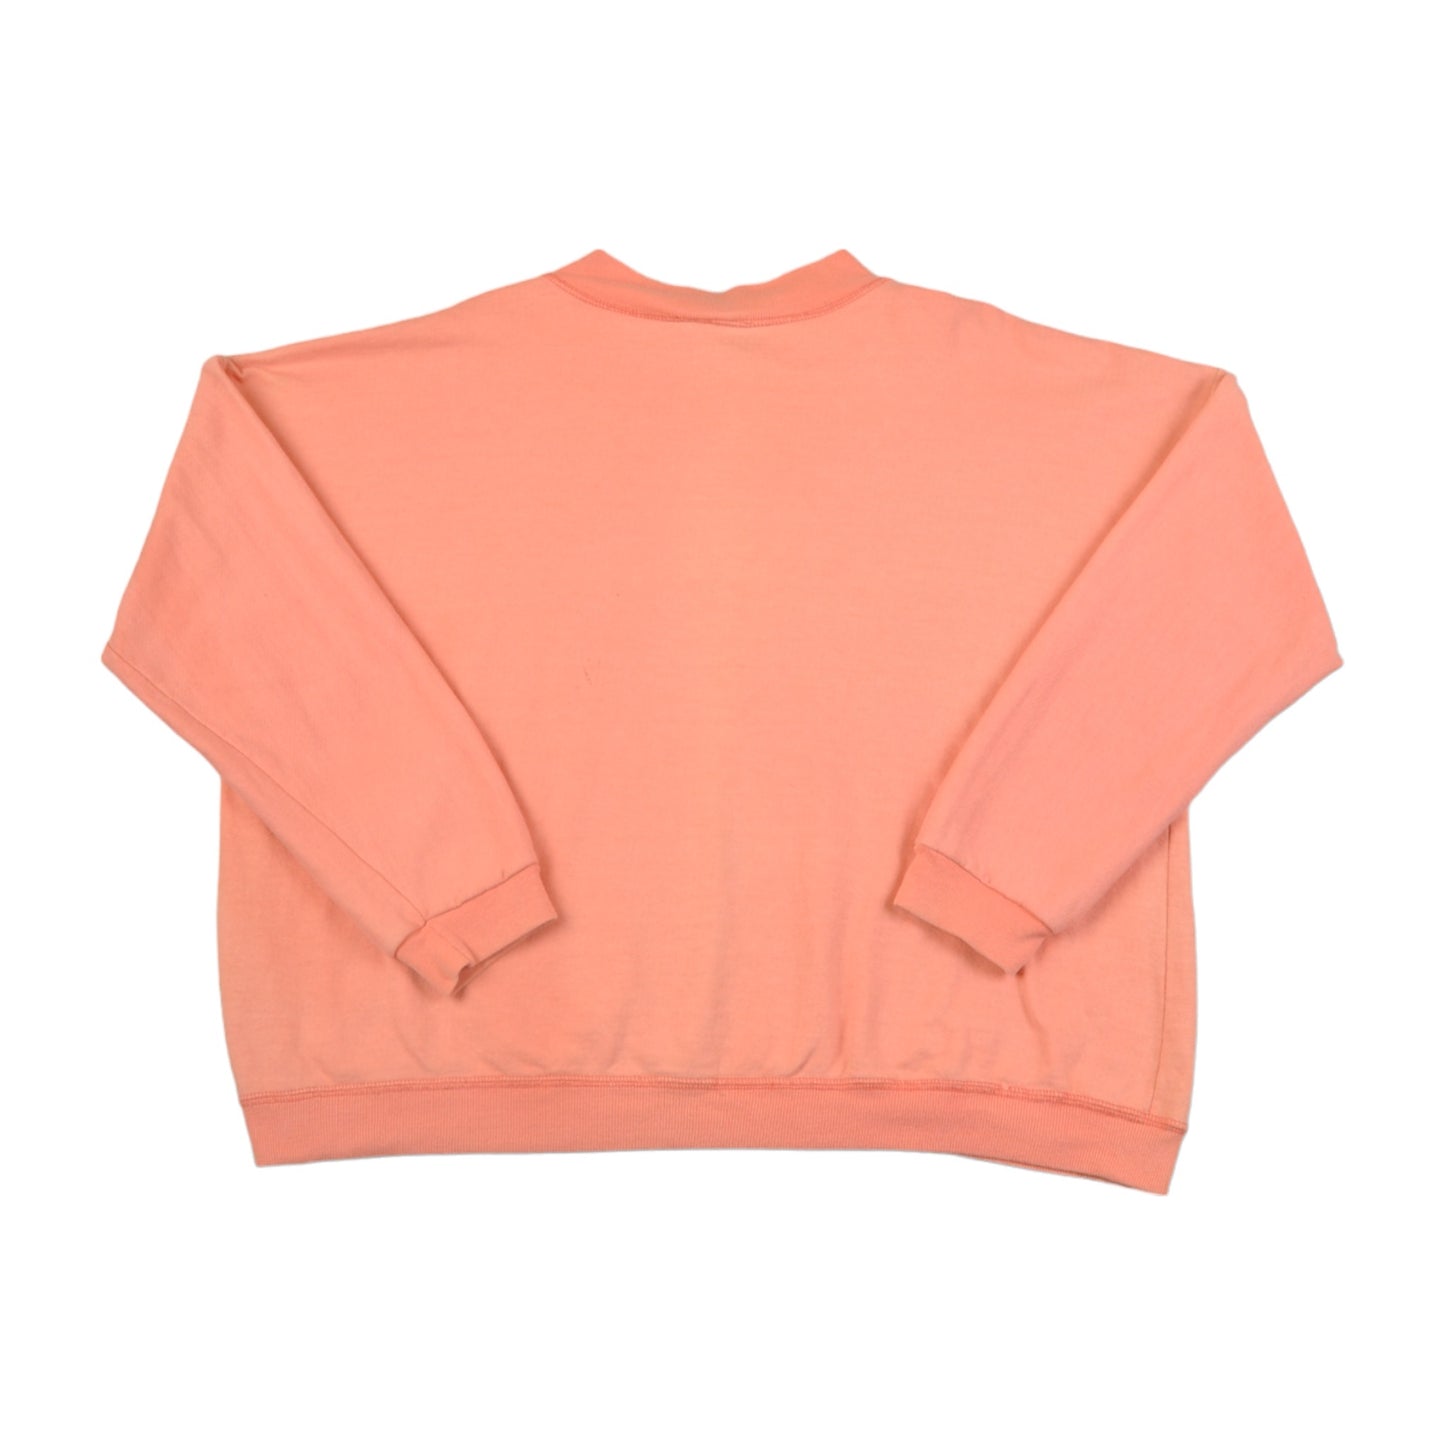 Vintage 90s Sweatshirt Pink Ladies Large